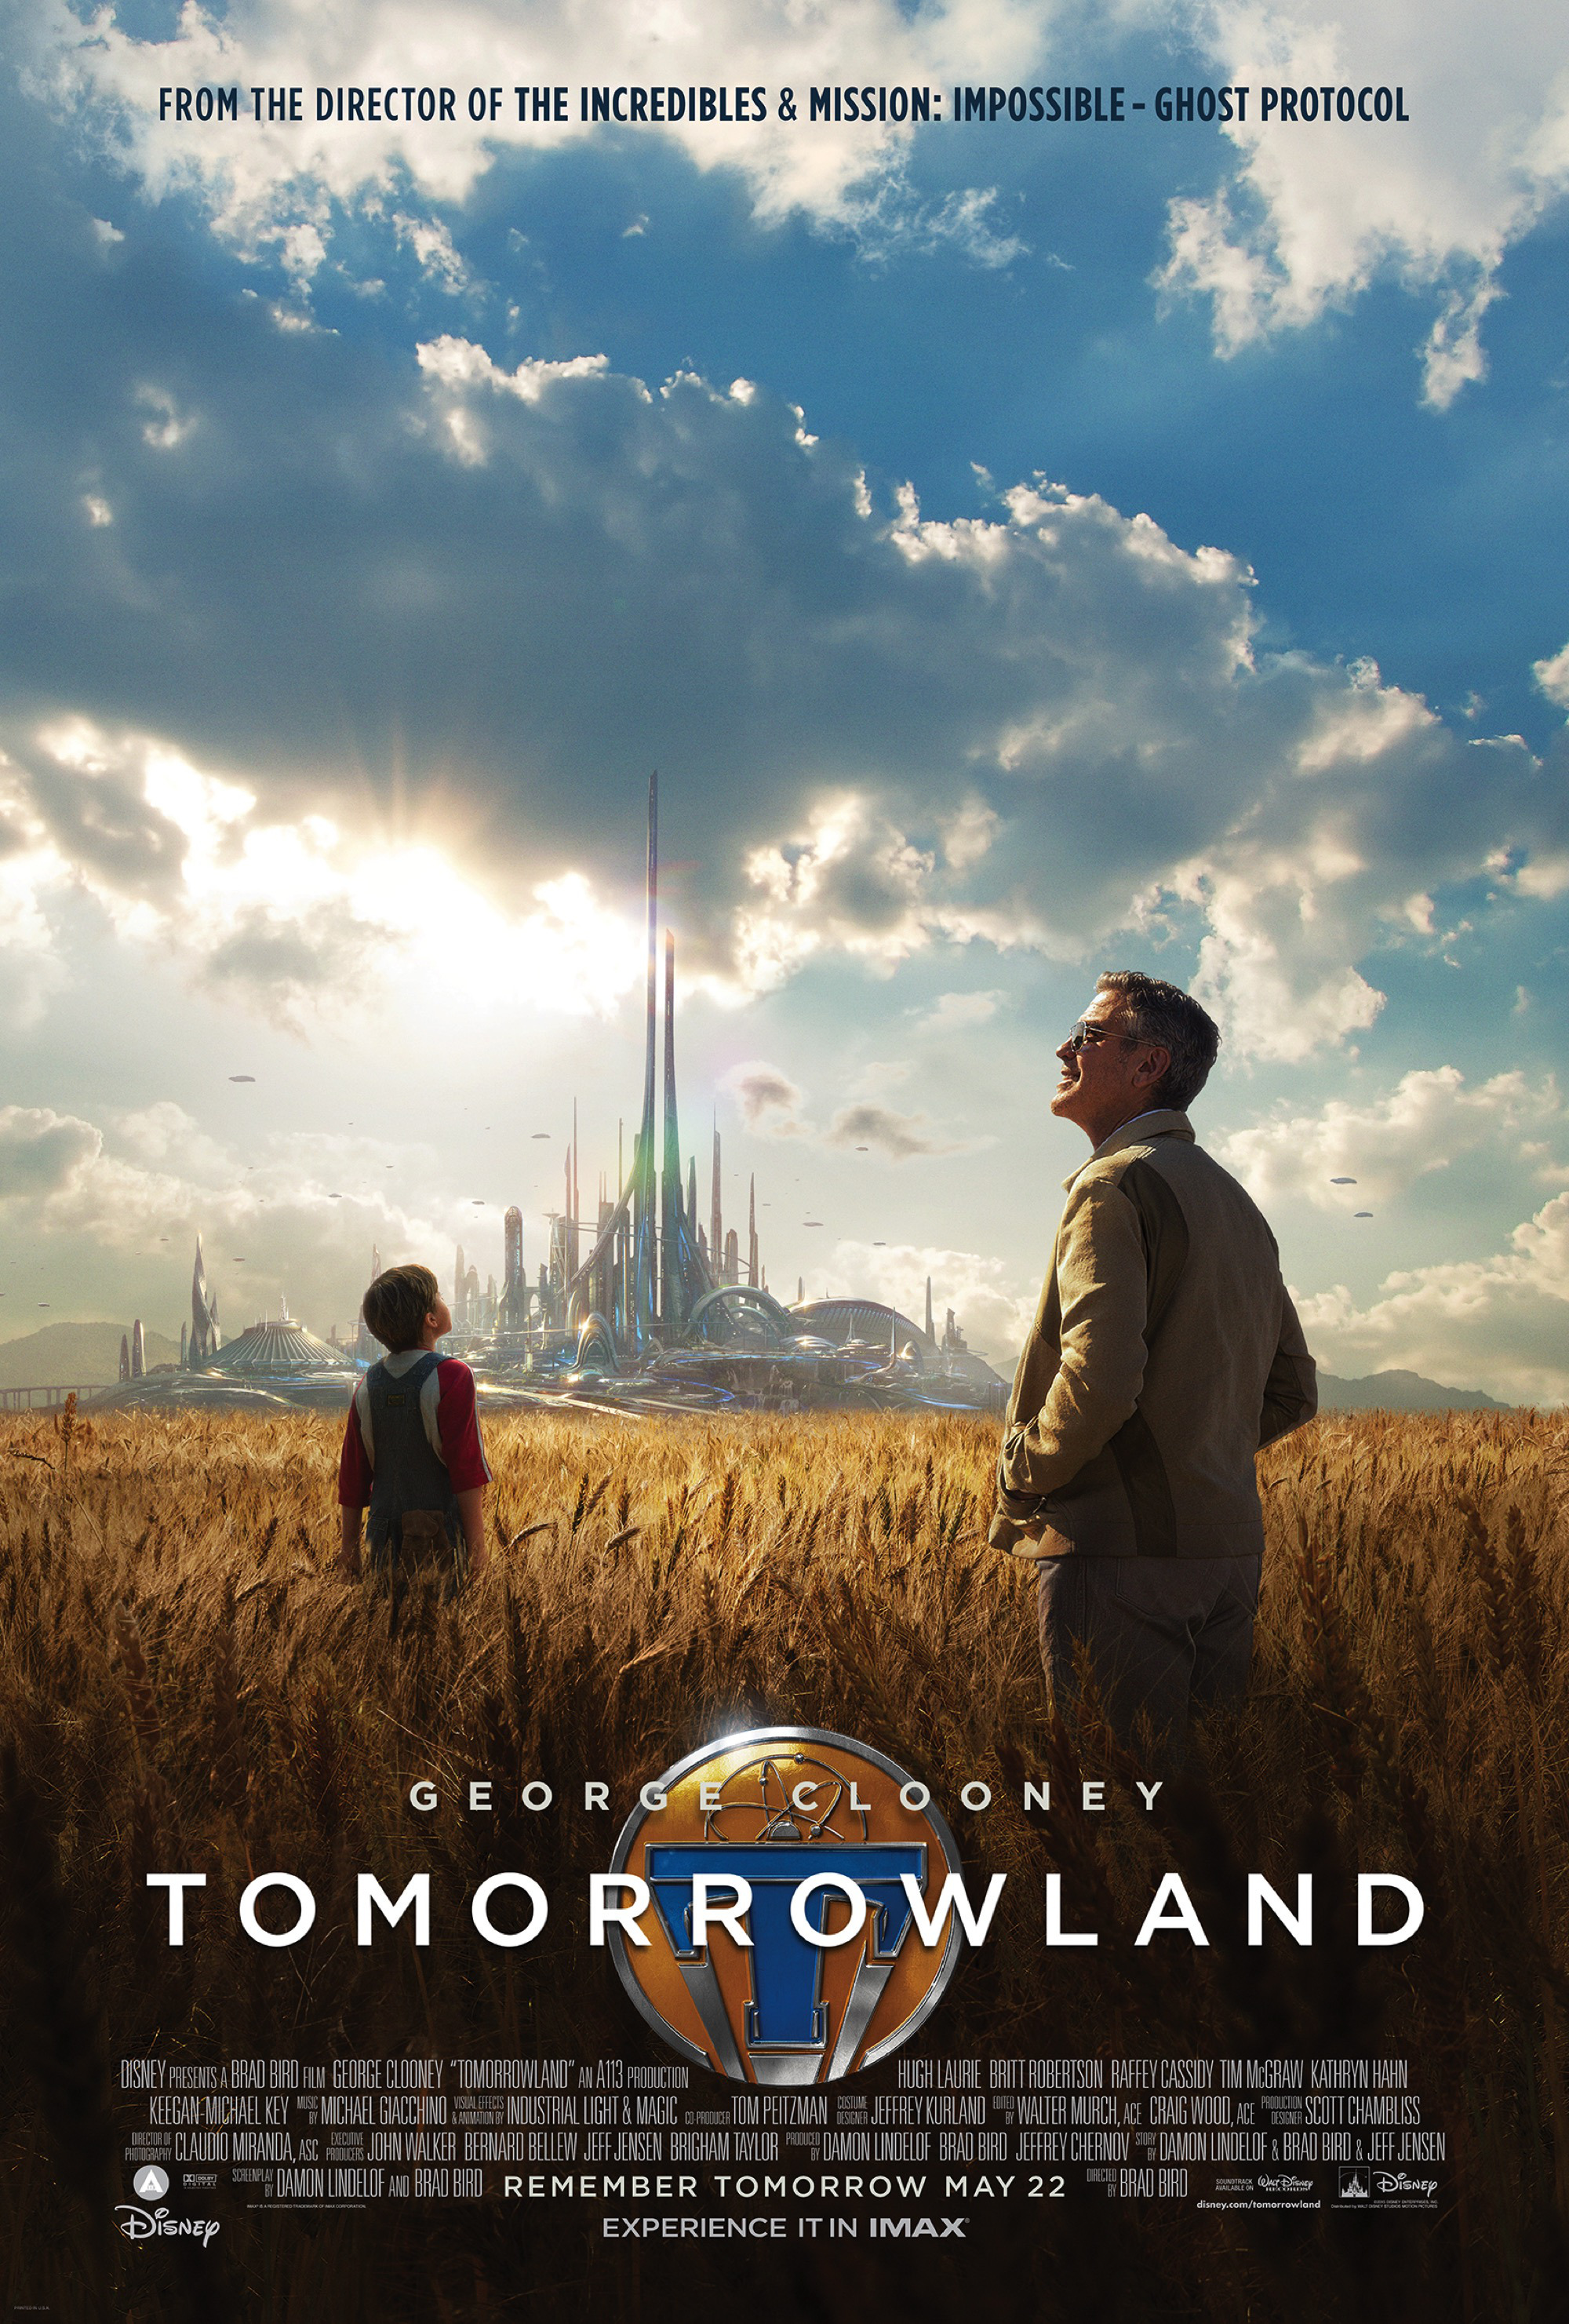 Tomorrowland film review: Disney brings the nostalgia